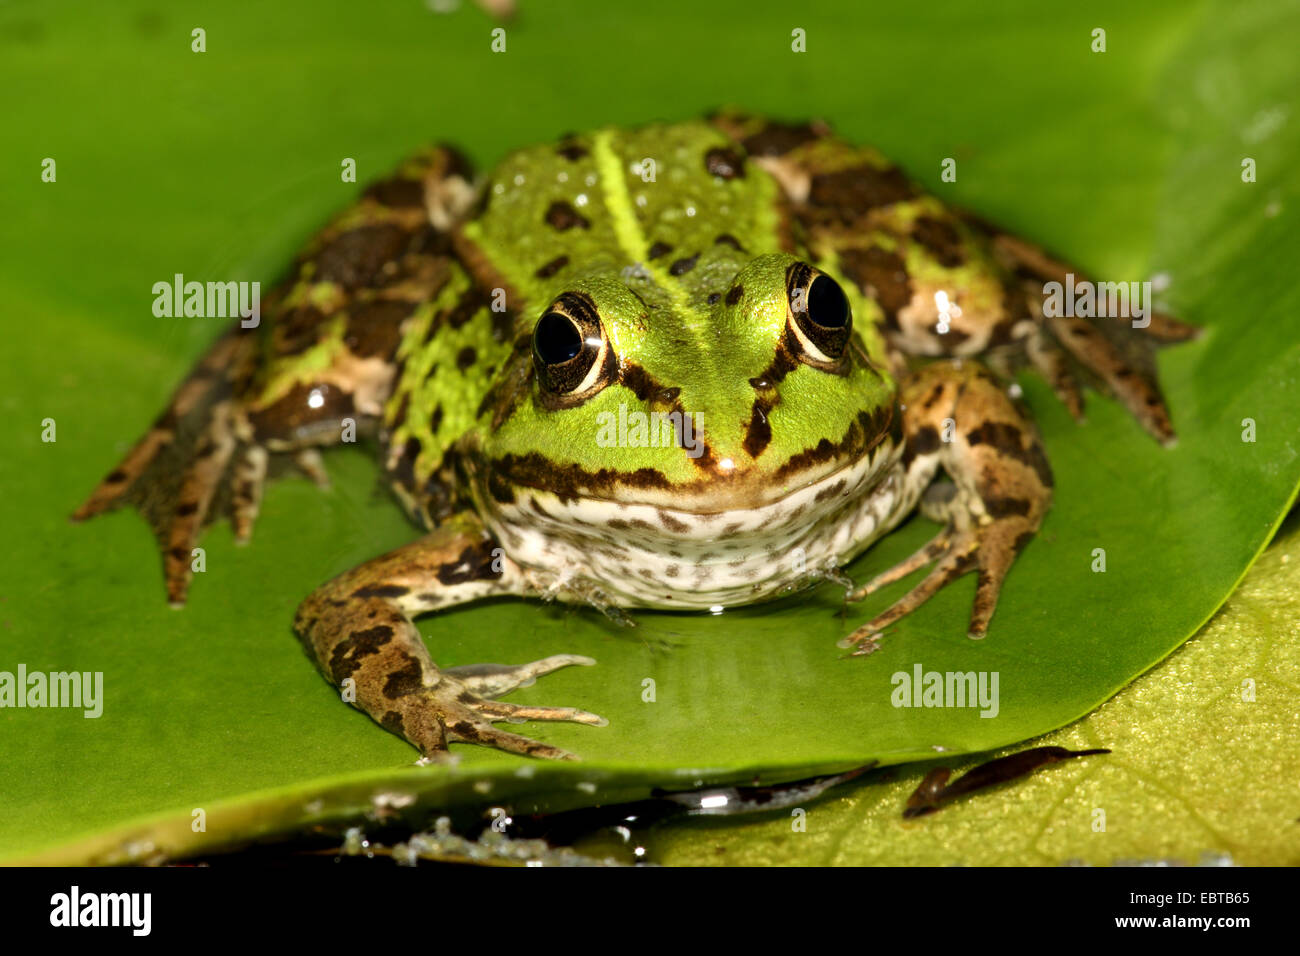 Europäische essbare Frosch, essbare Grasfrosch (Rana kl. Esculenta, Rana Esculenta), sitzt auf einem Blatt, Deutschland Stockfoto